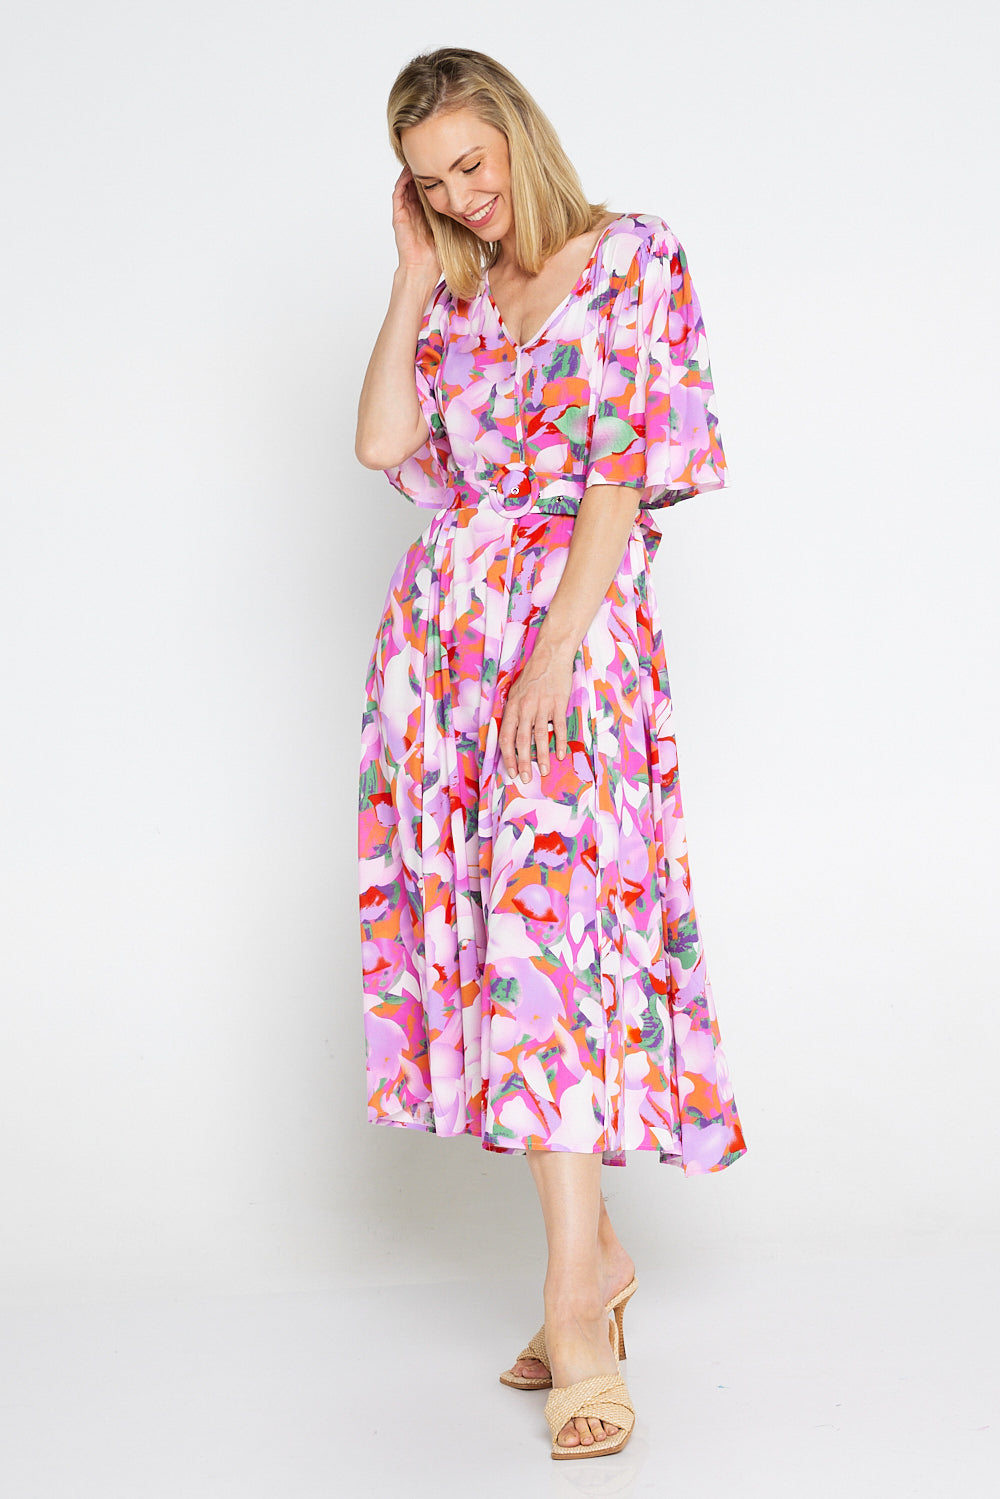 Sherine Dress - Summer Sunset Floral